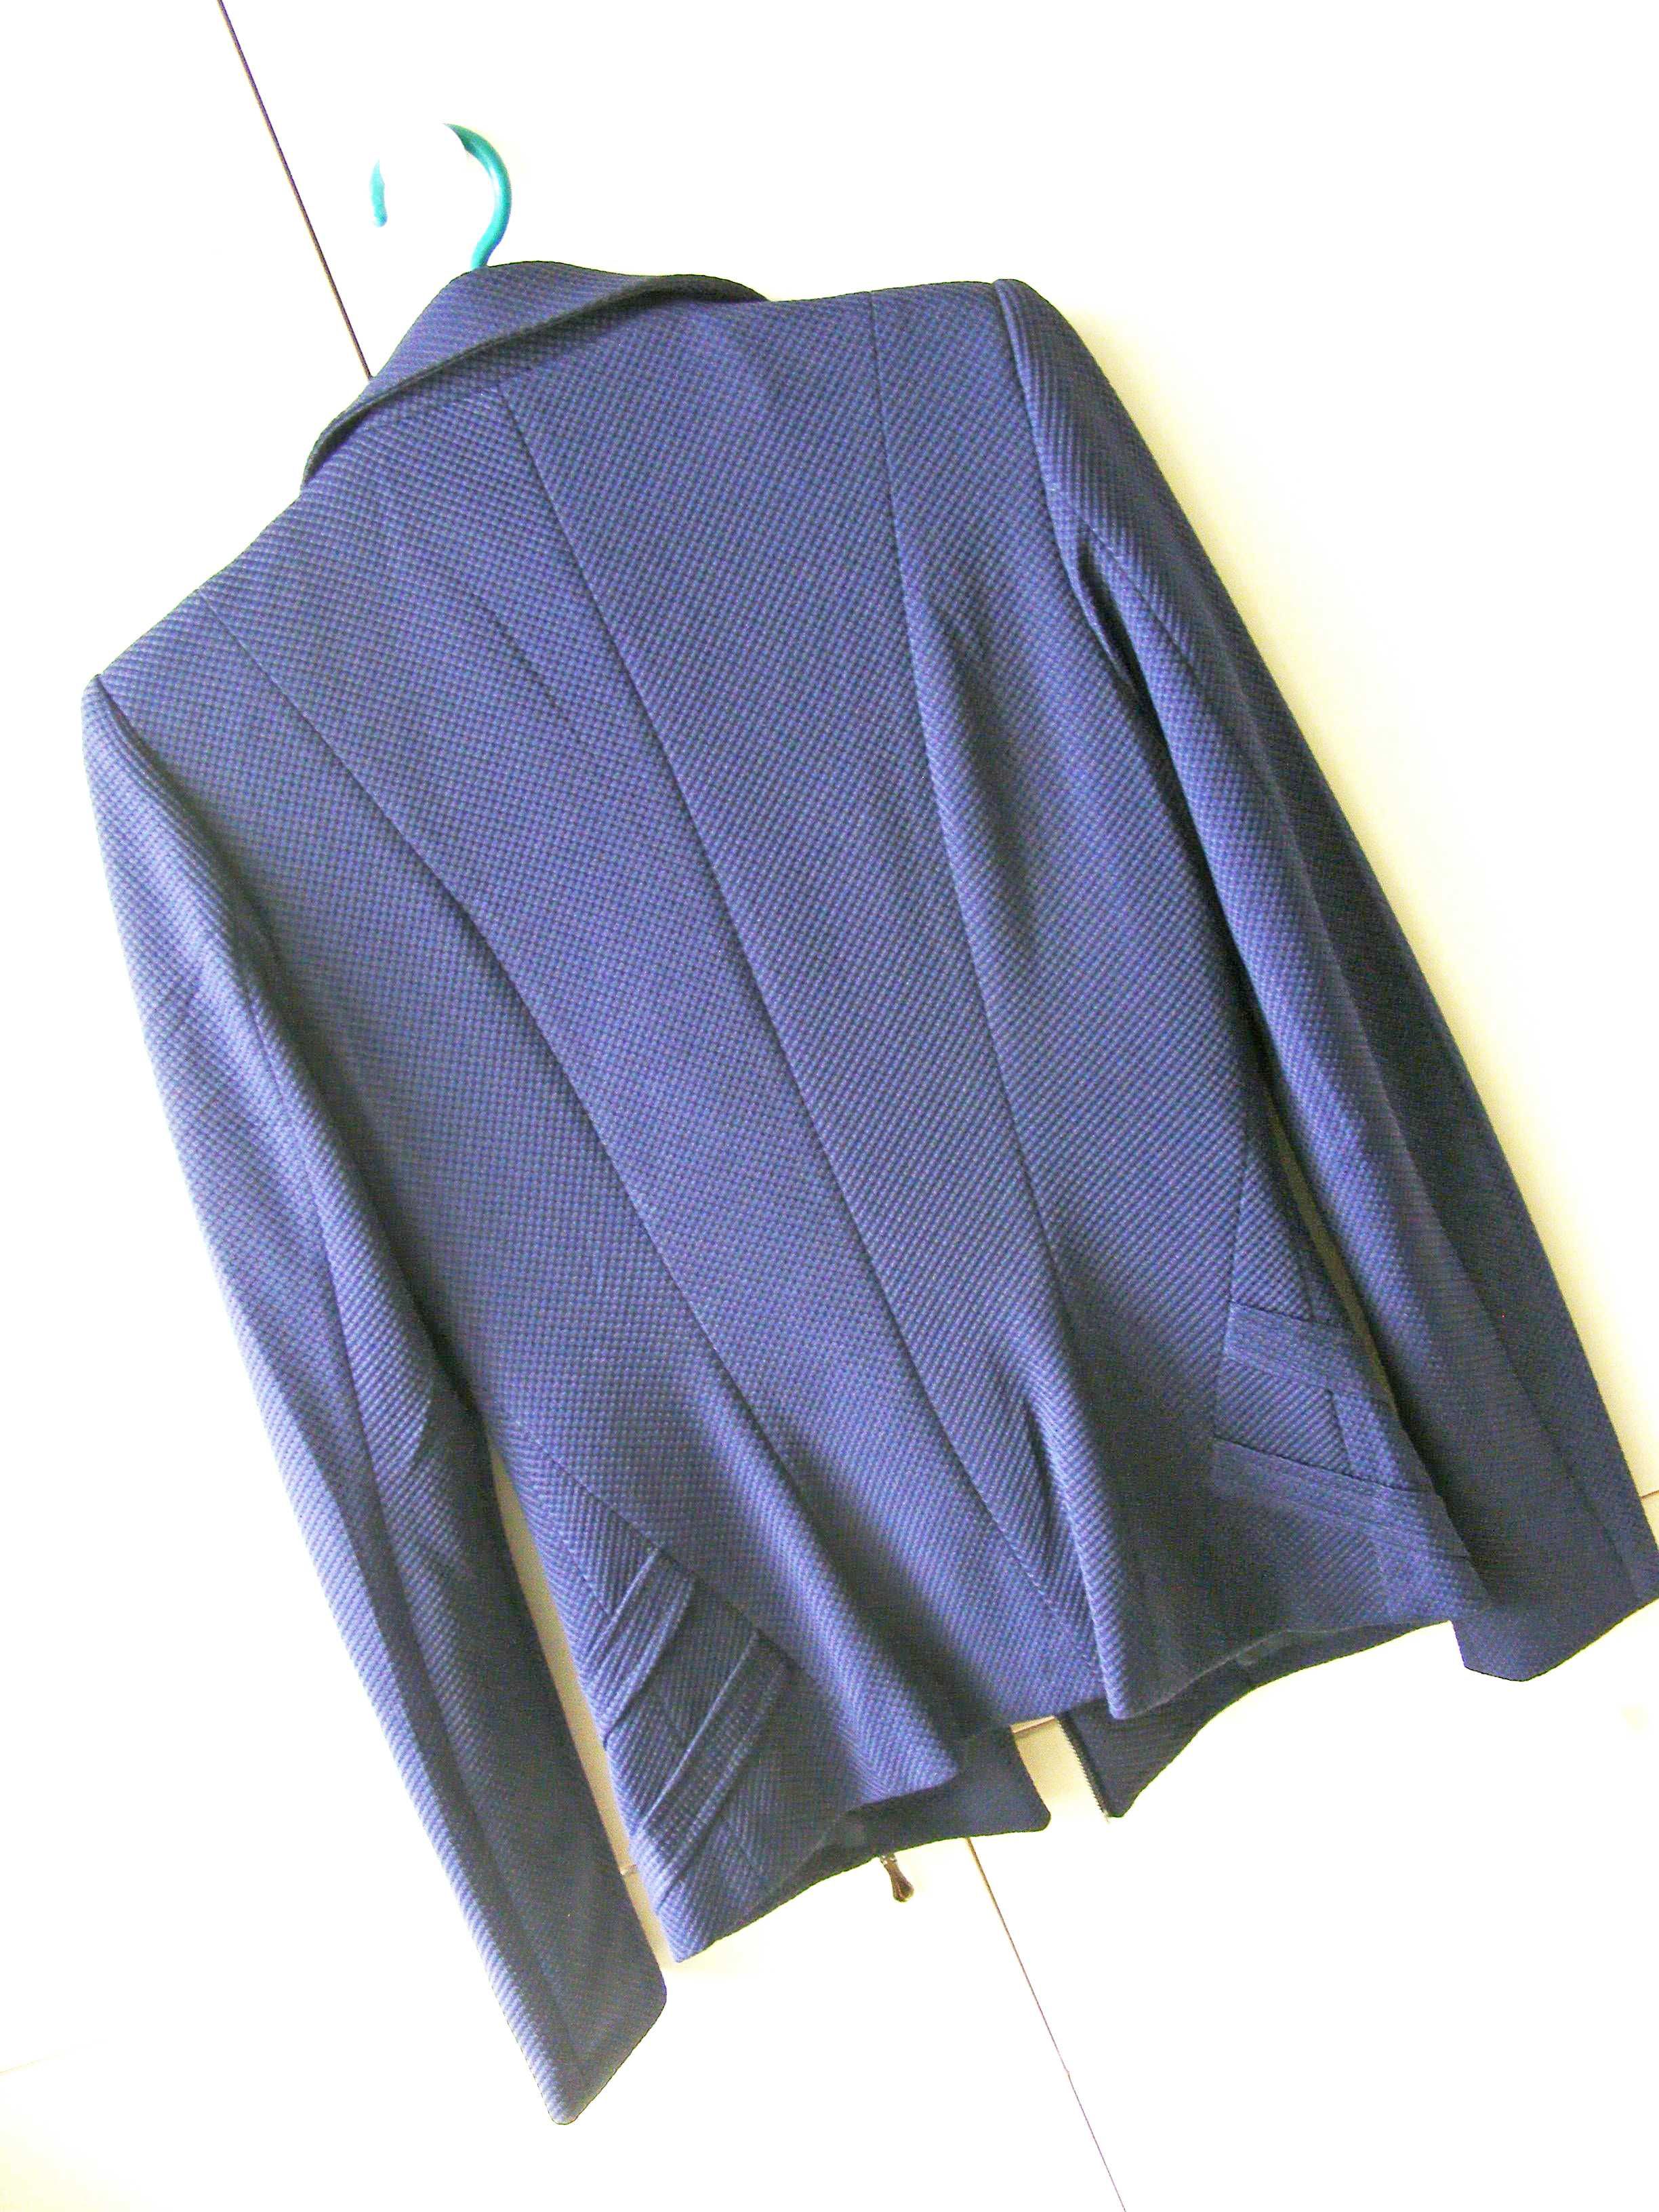 Пиджак жакет косуха Lanmas цвет индиго размер S для школы или в офис